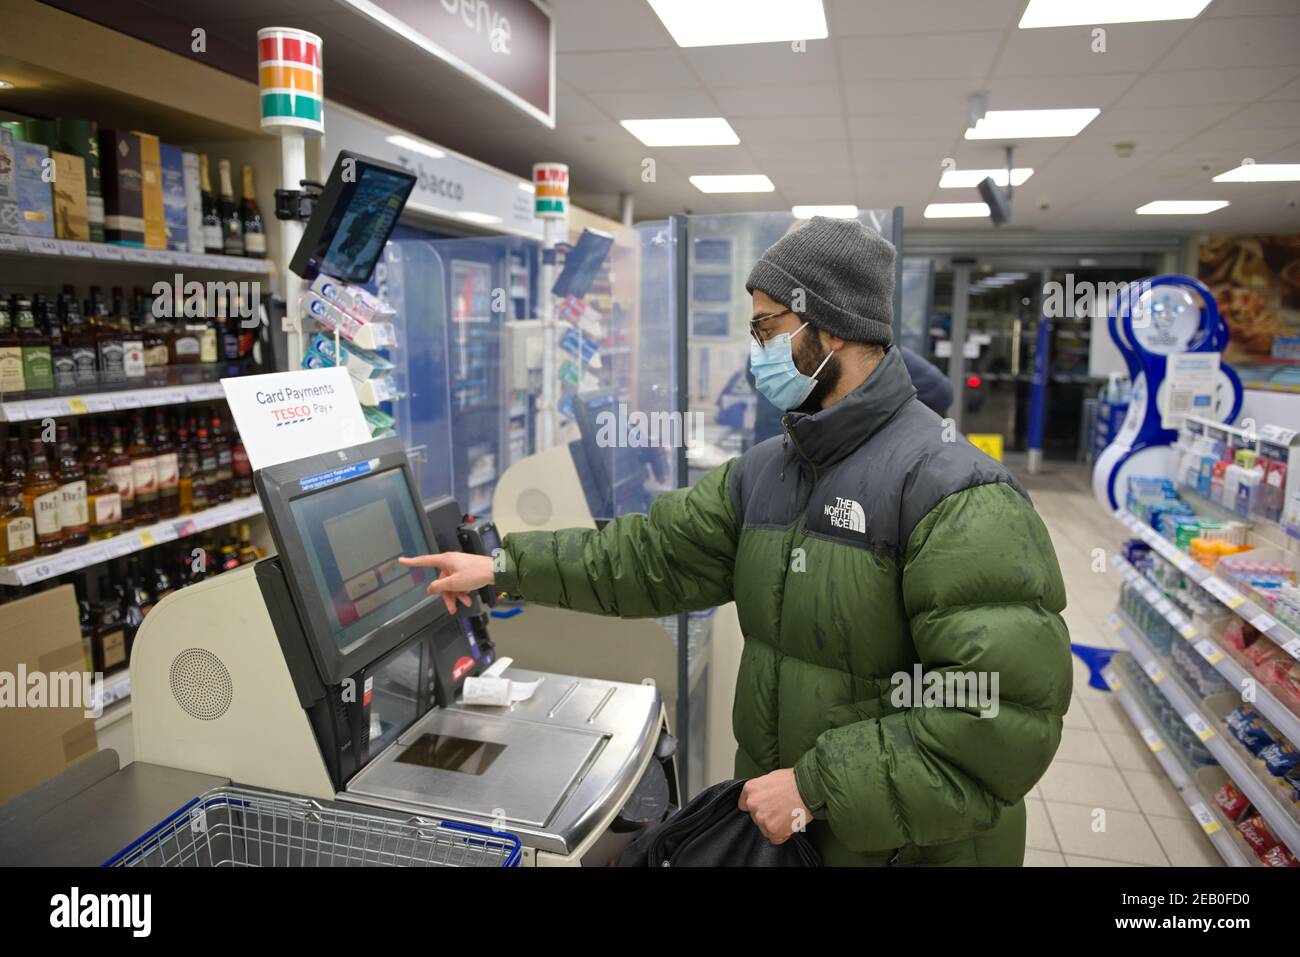 Sheffield, Royaume-Uni, 14 janvier 2021 : un jeune homme portant un masque facial et des vêtements d'hiver paie pour les courses à un auto-caisse express Tesco Banque D'Images